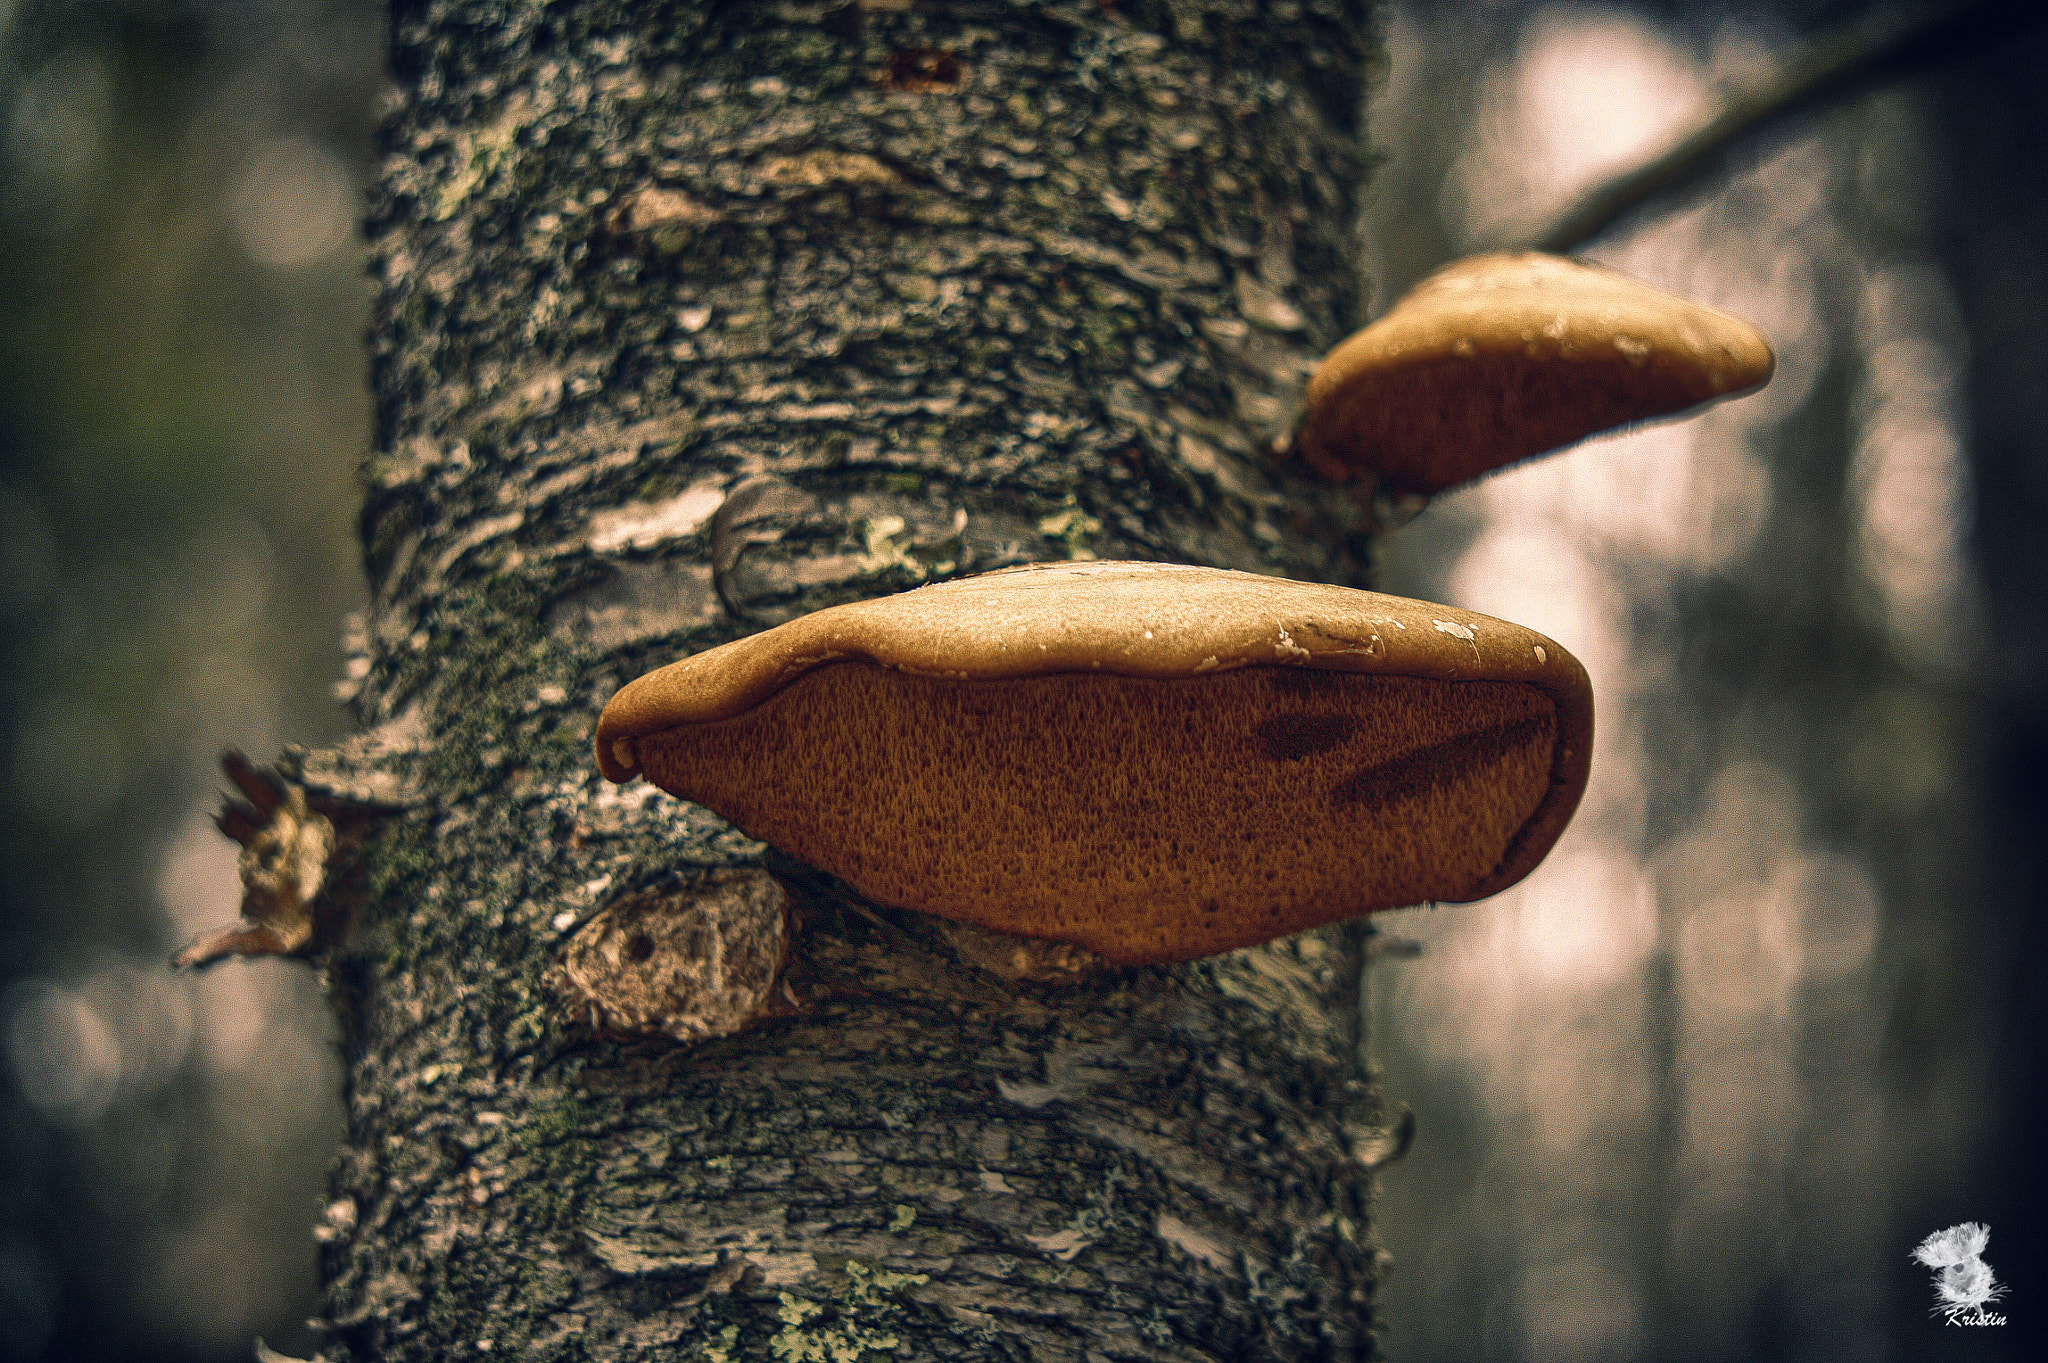 Sony Alpha NEX-3 sample photo. Tree fungus photography